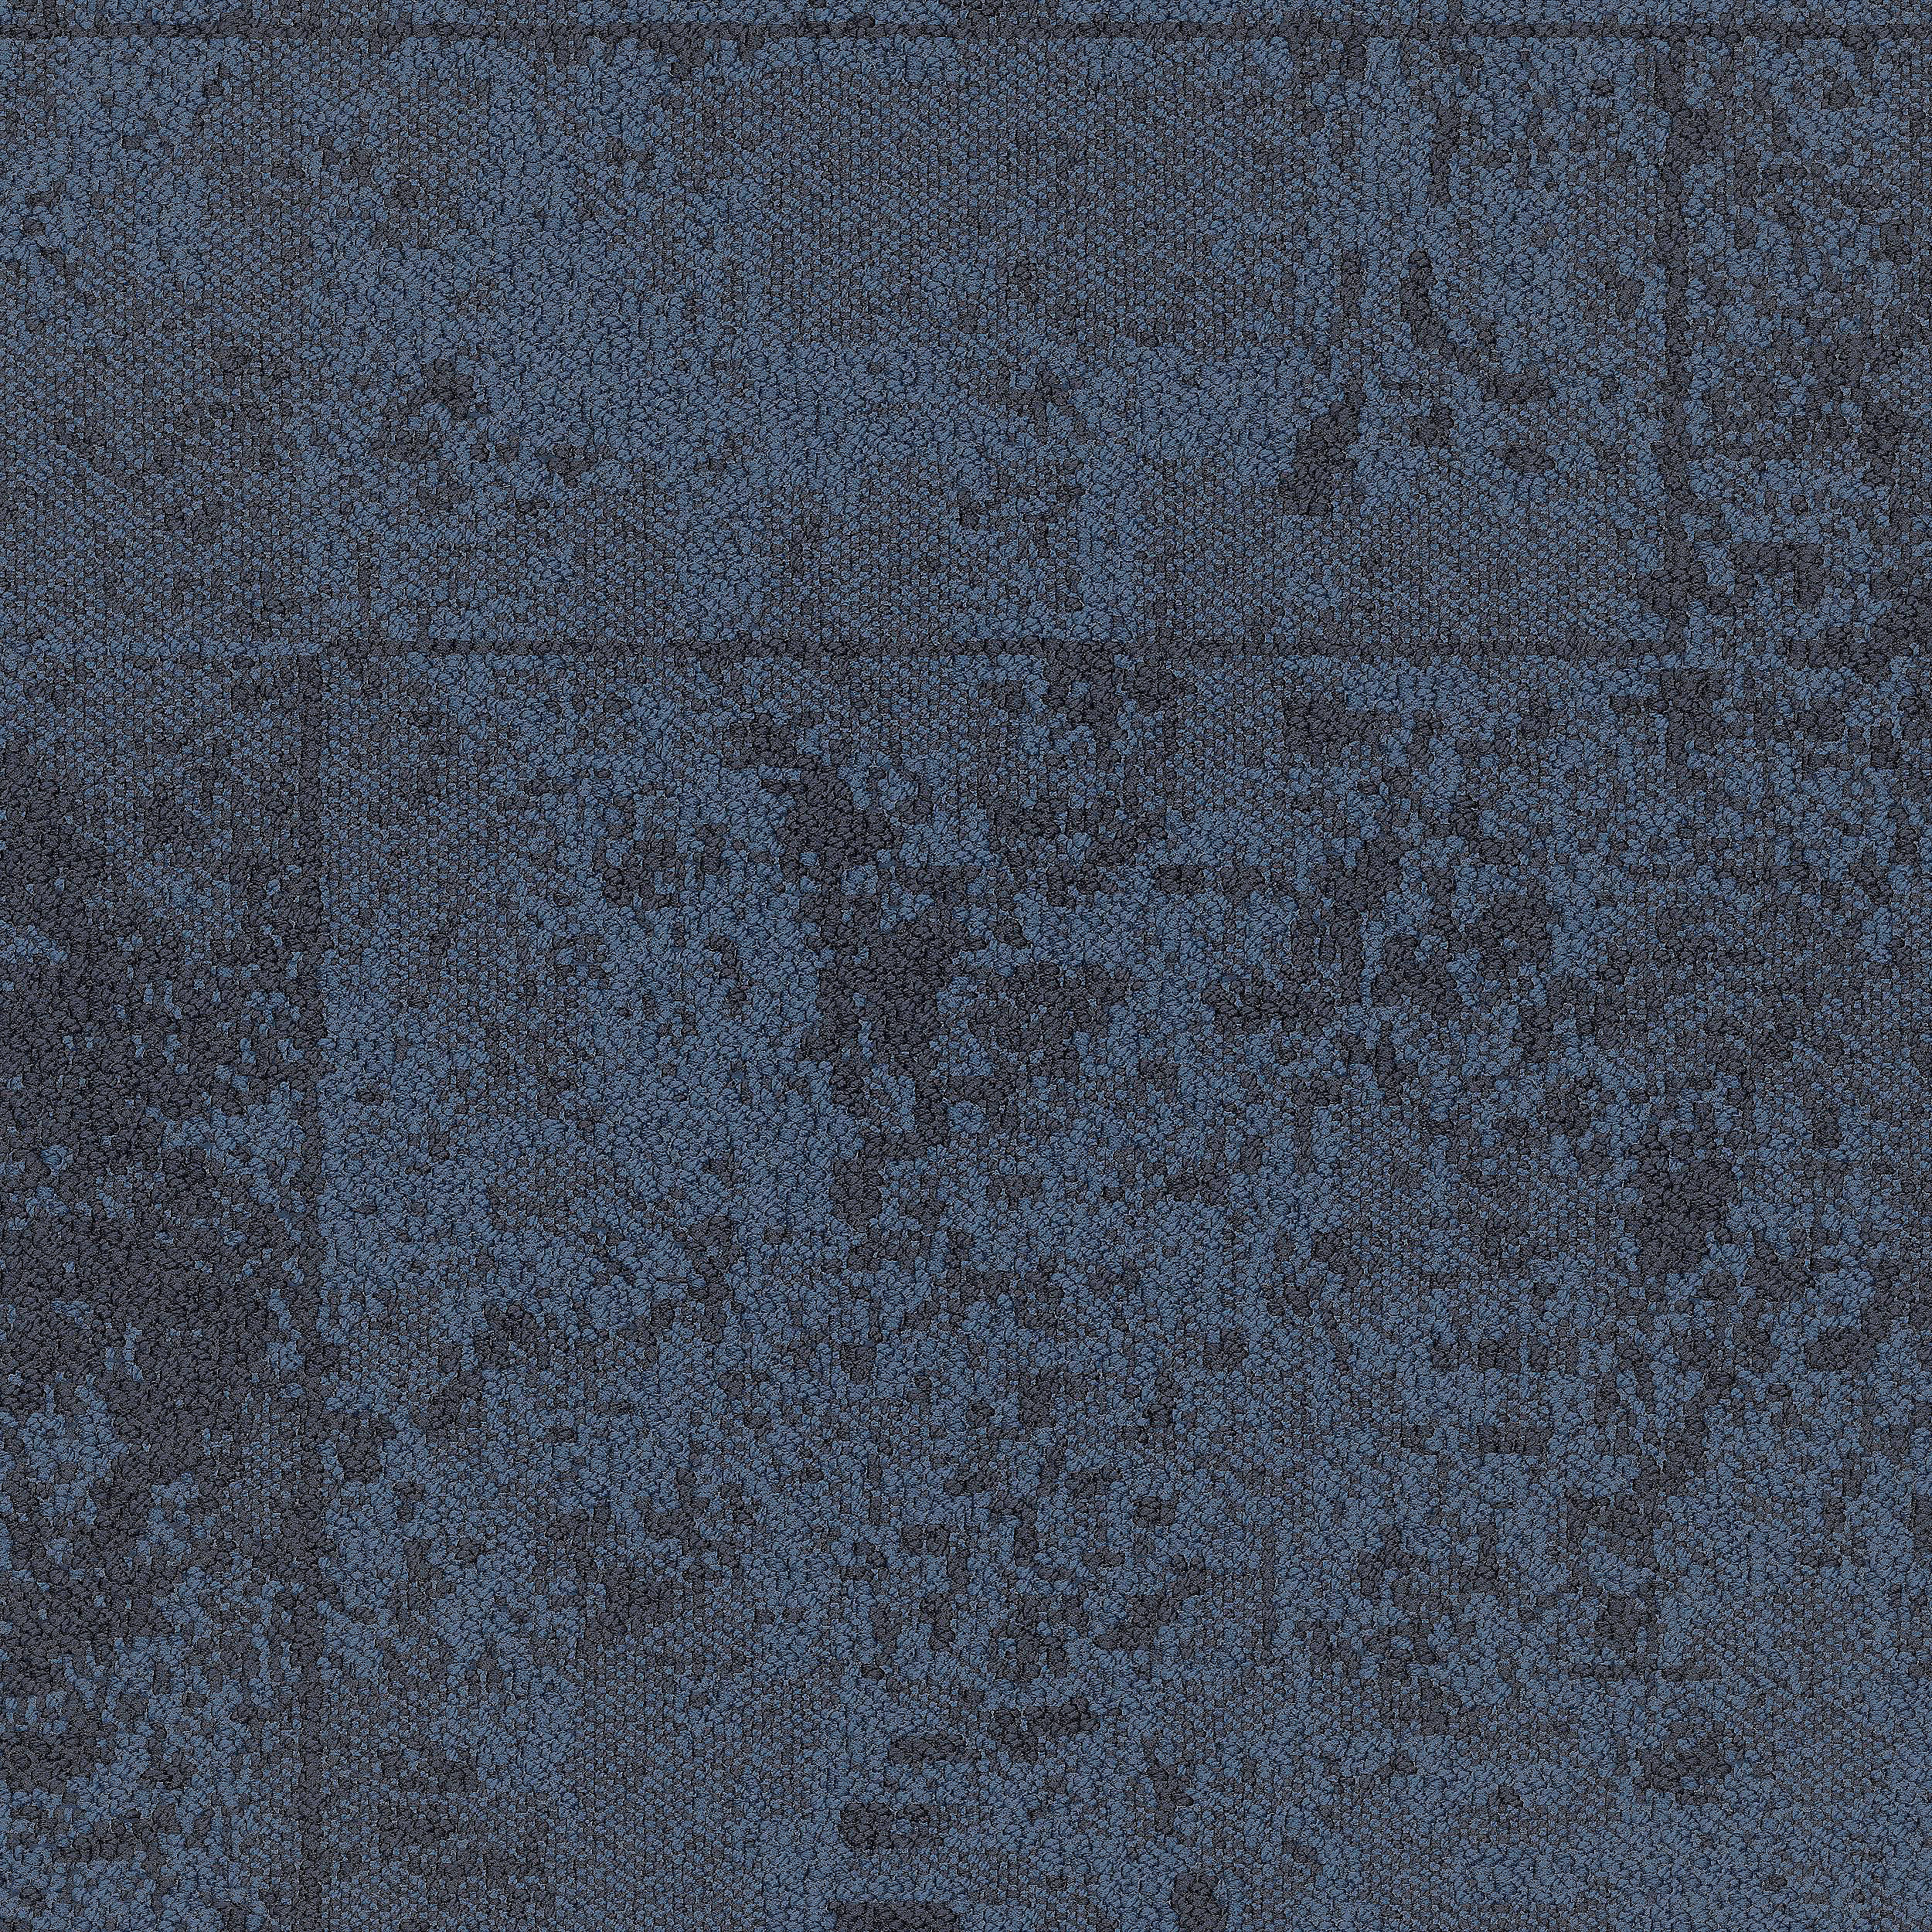 B603 Carpet Tile In Pacific Bildnummer 10